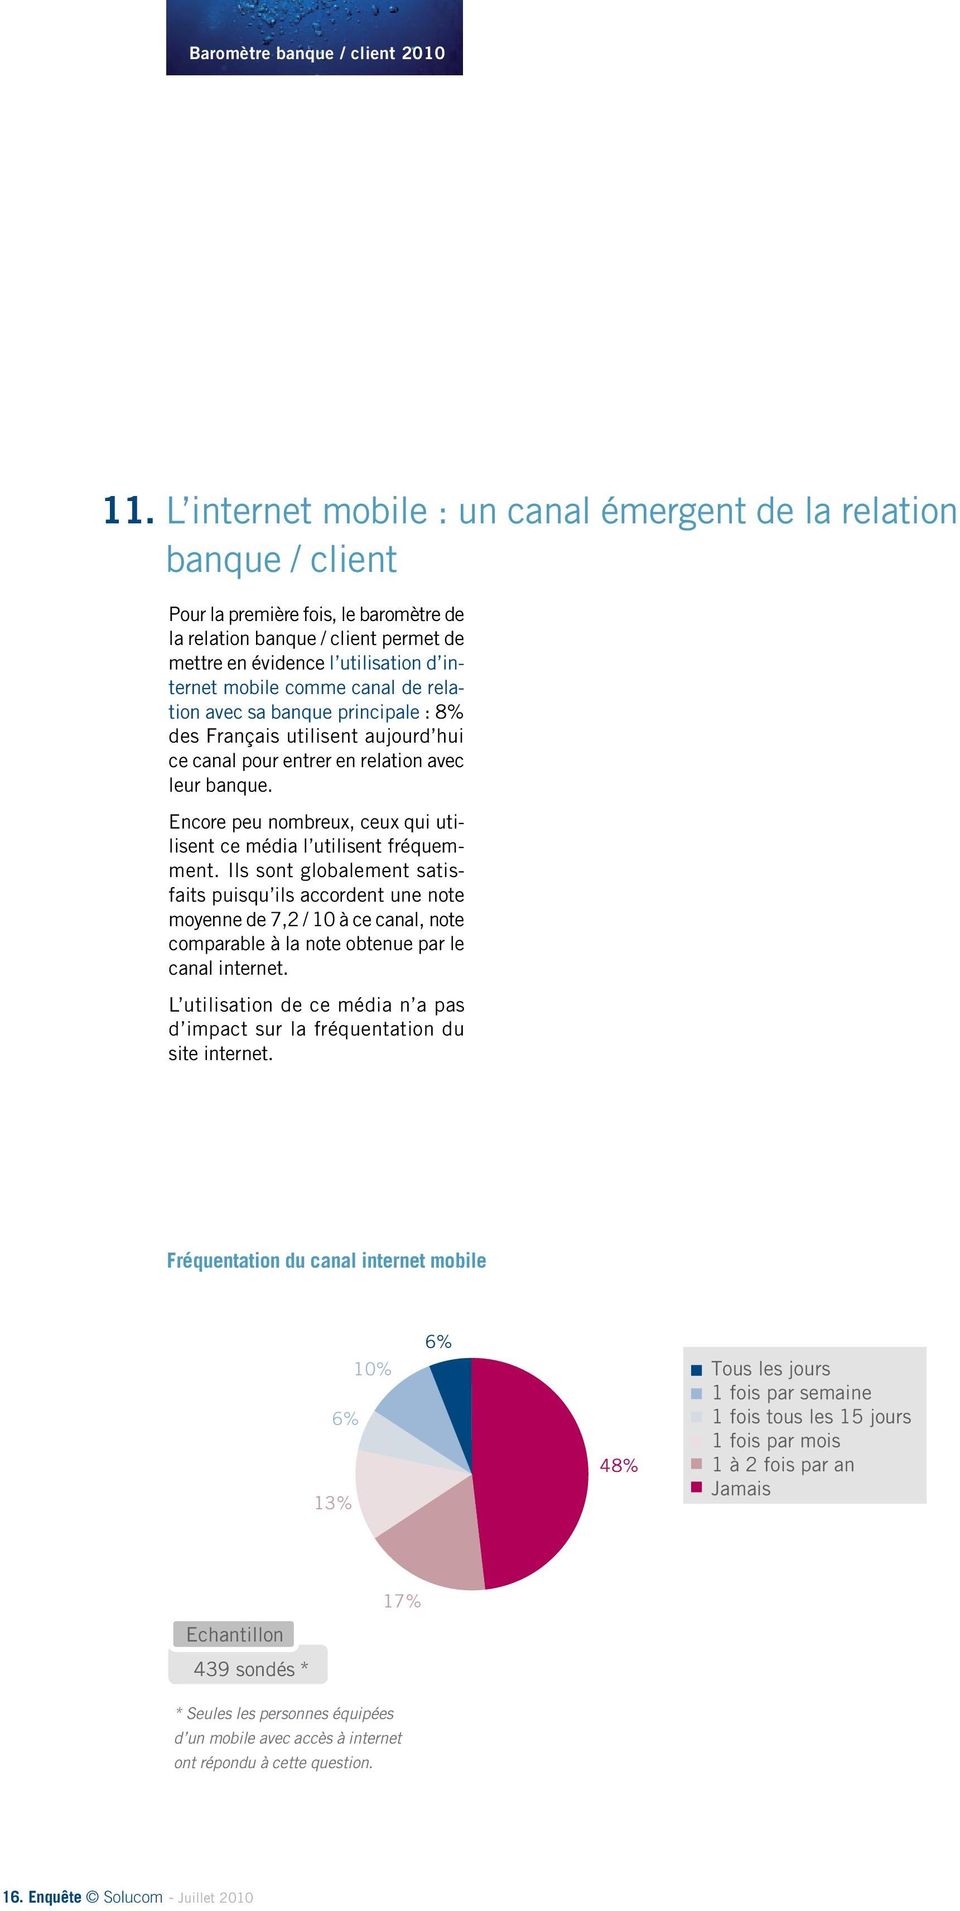 comme canal de relation avec sa banque principale : 8% des Français utilisent aujourd hui ce canal pour entrer en relation avec leur banque.